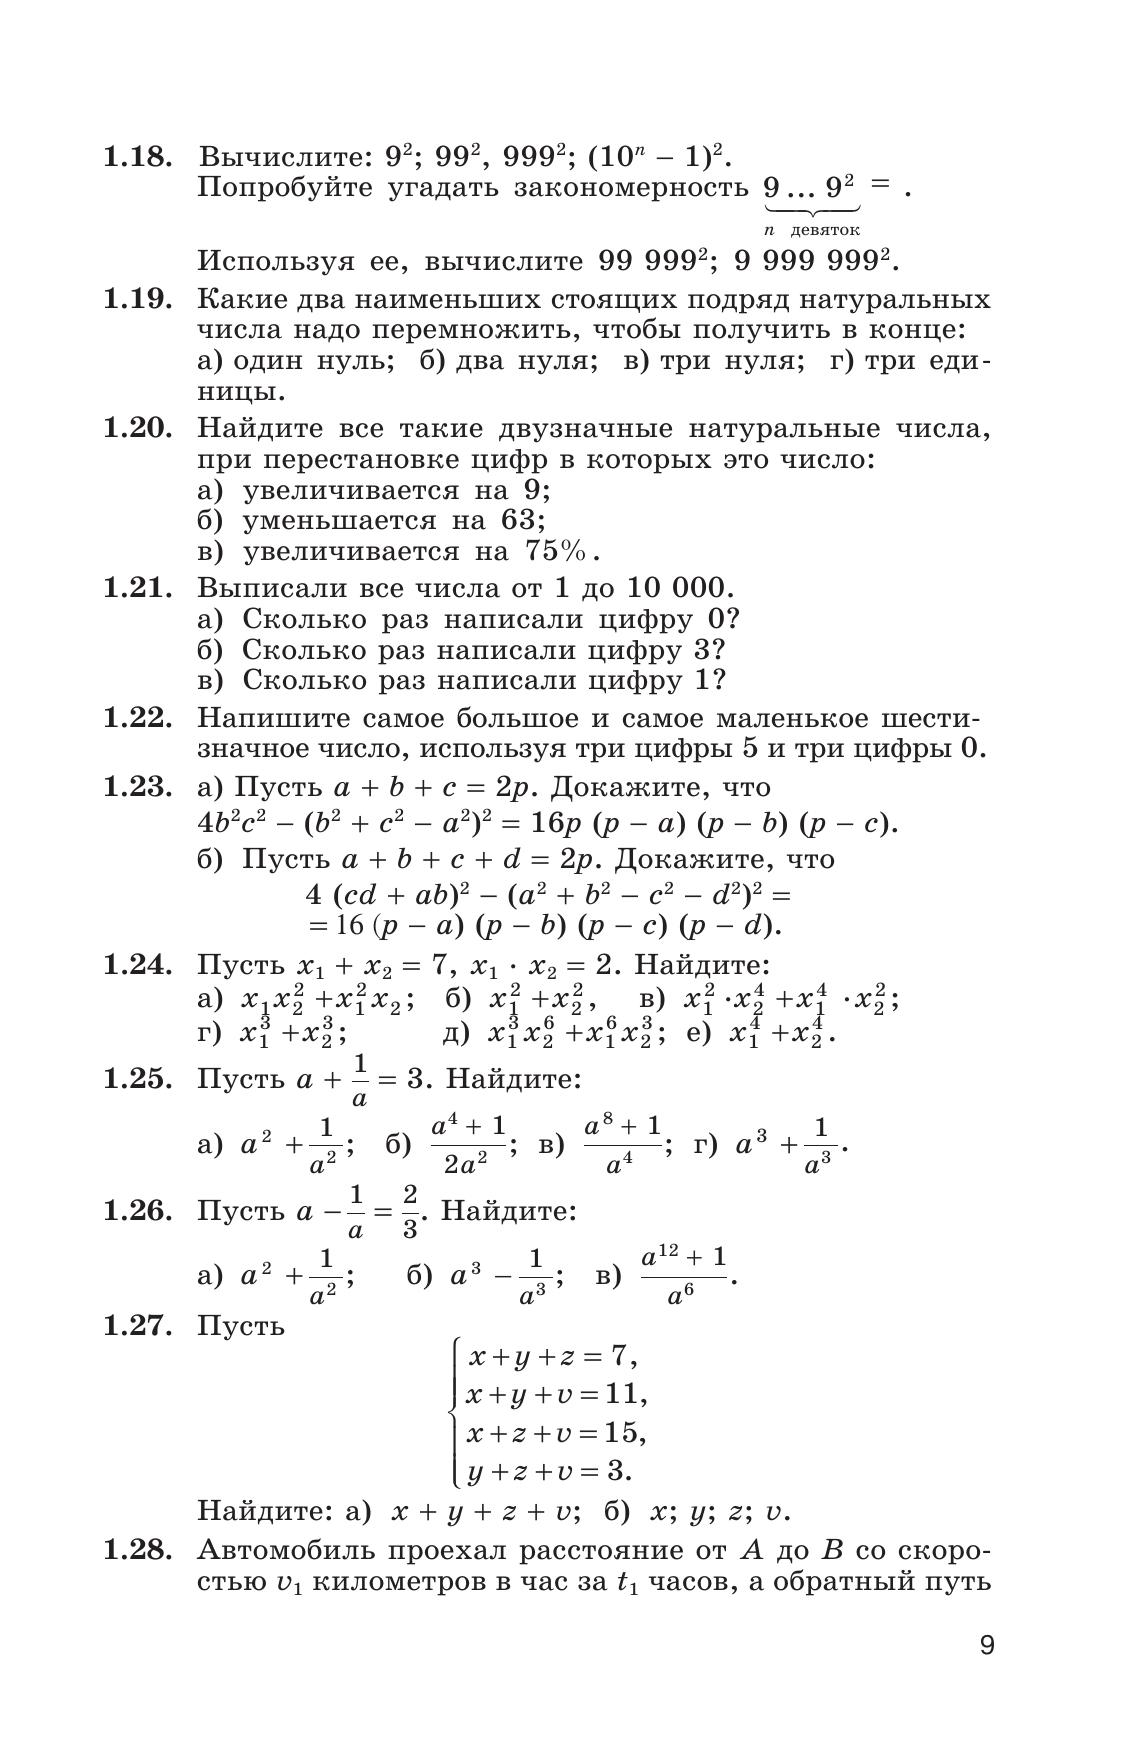 Сборник задач по алгебре. 8-9 классы. 4